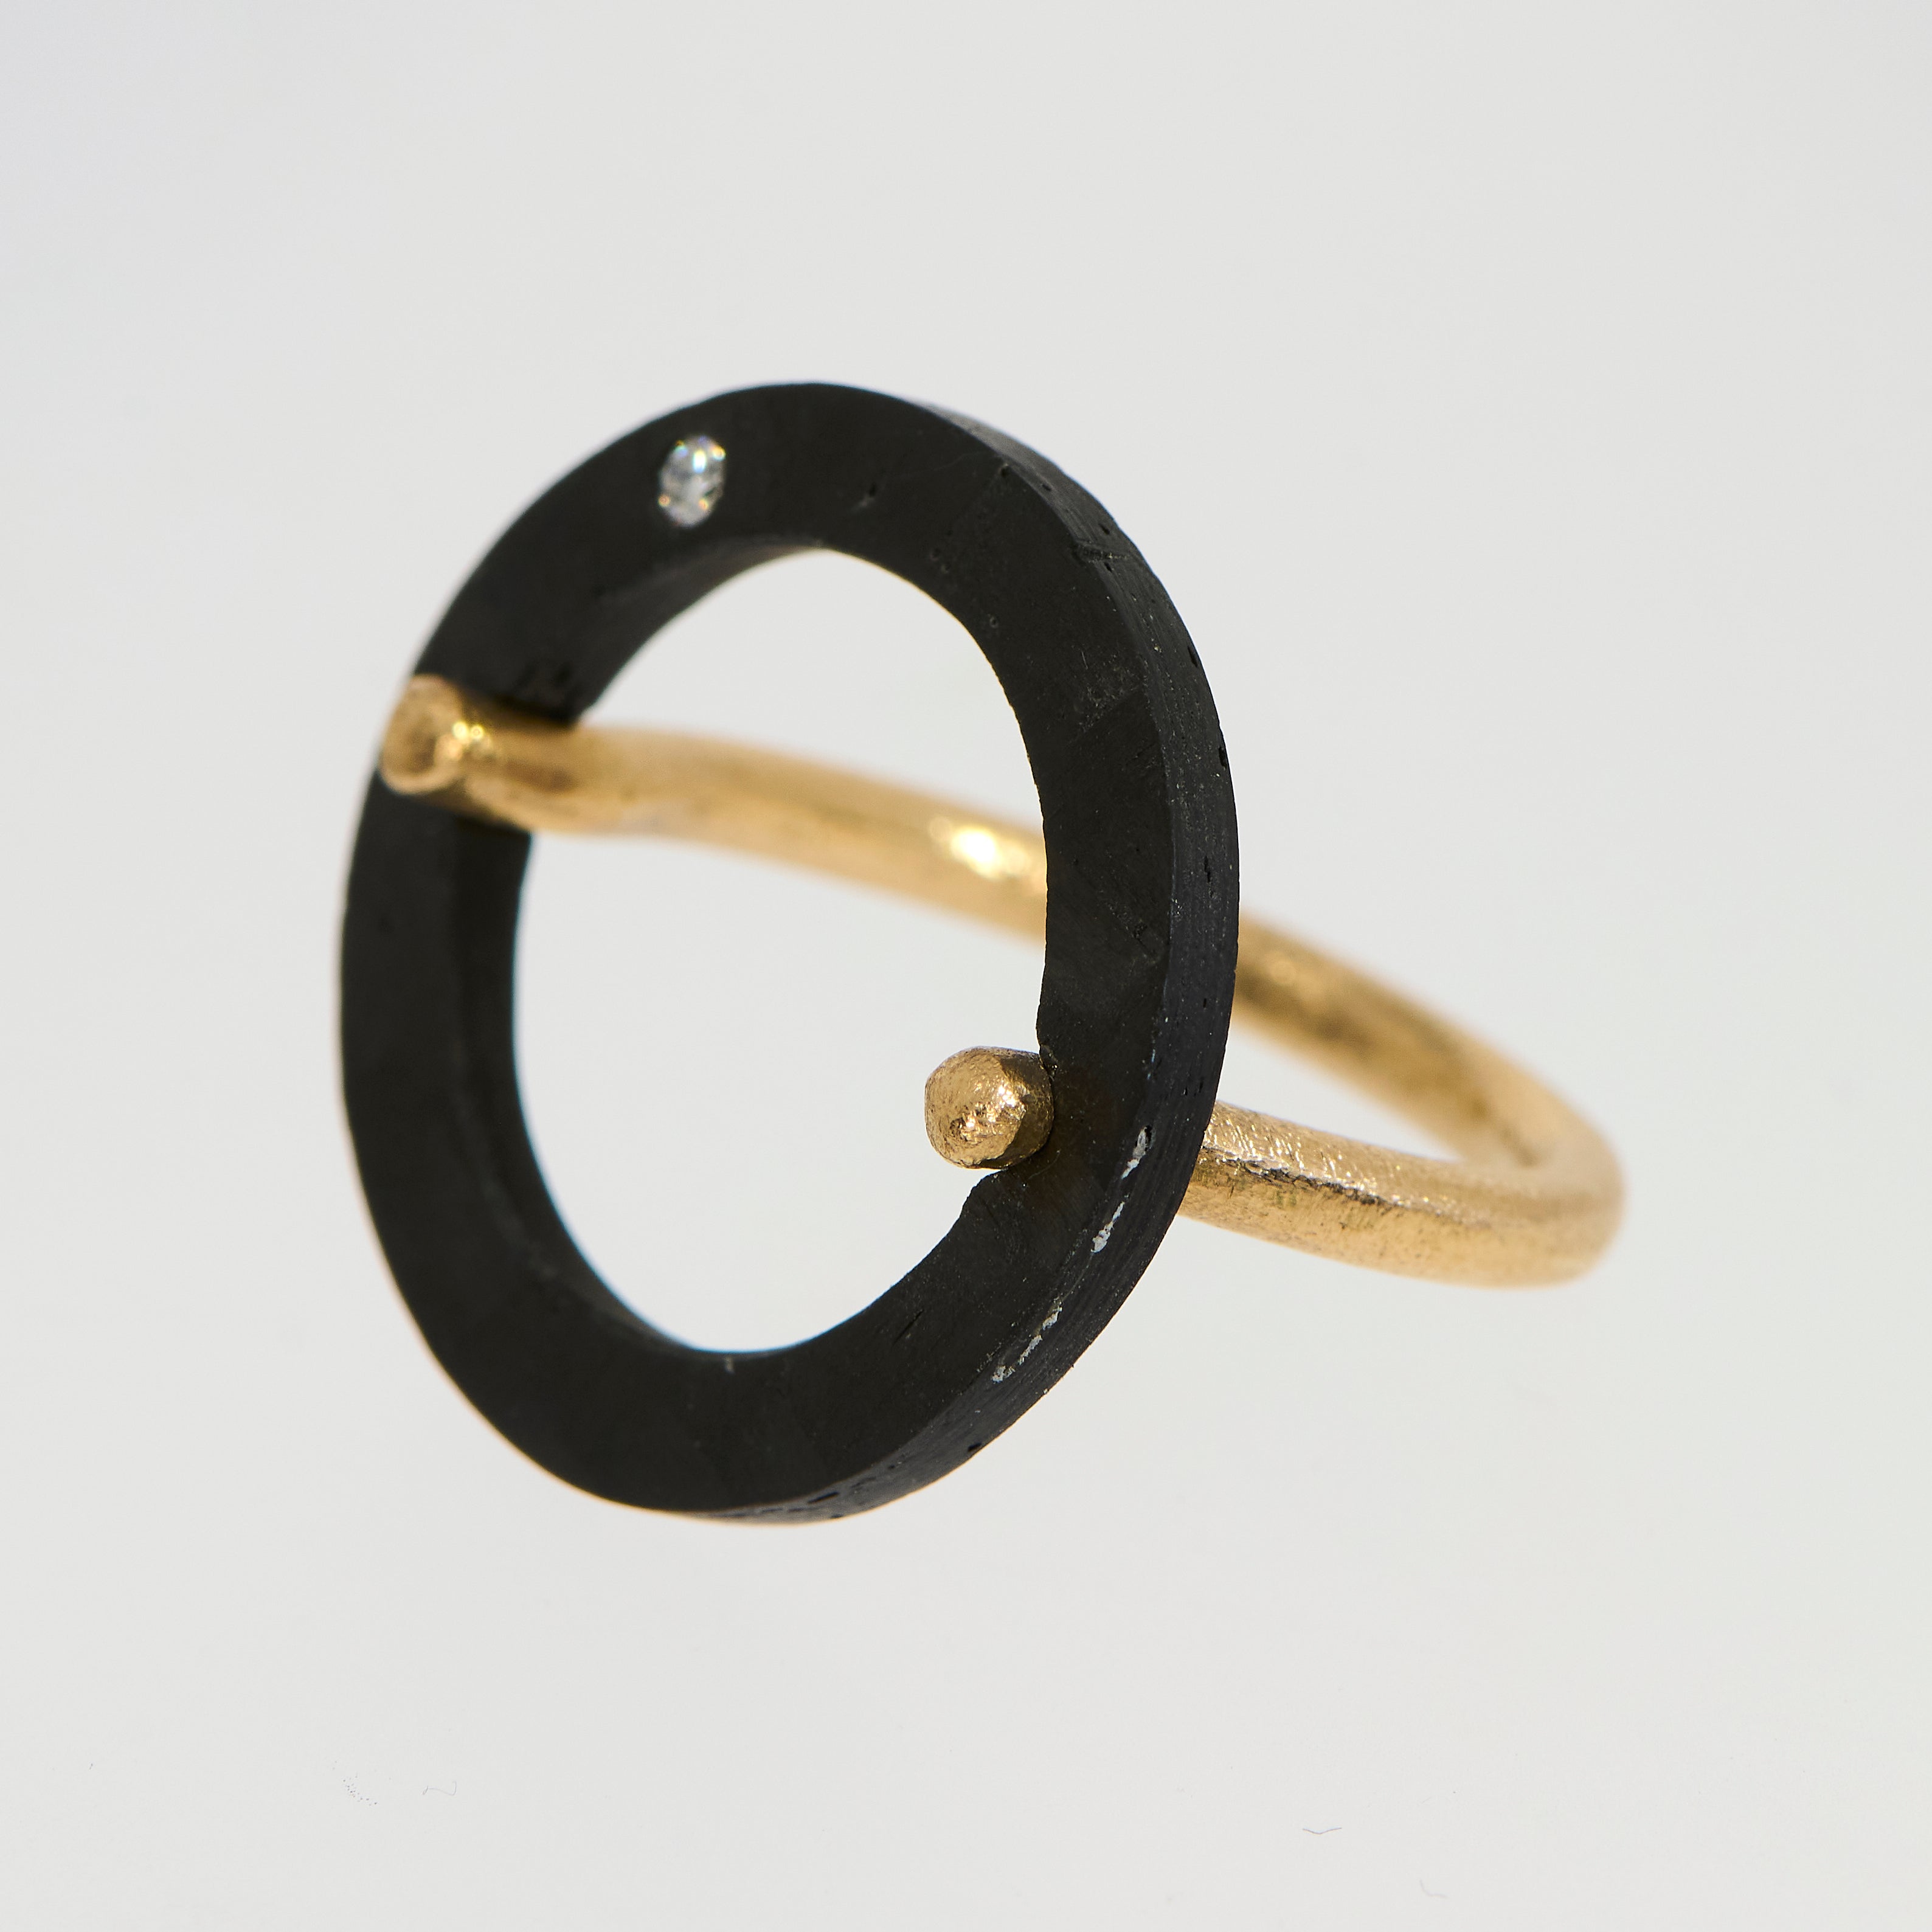 Brugt ring i 14kt gulguld med carbon og diamant